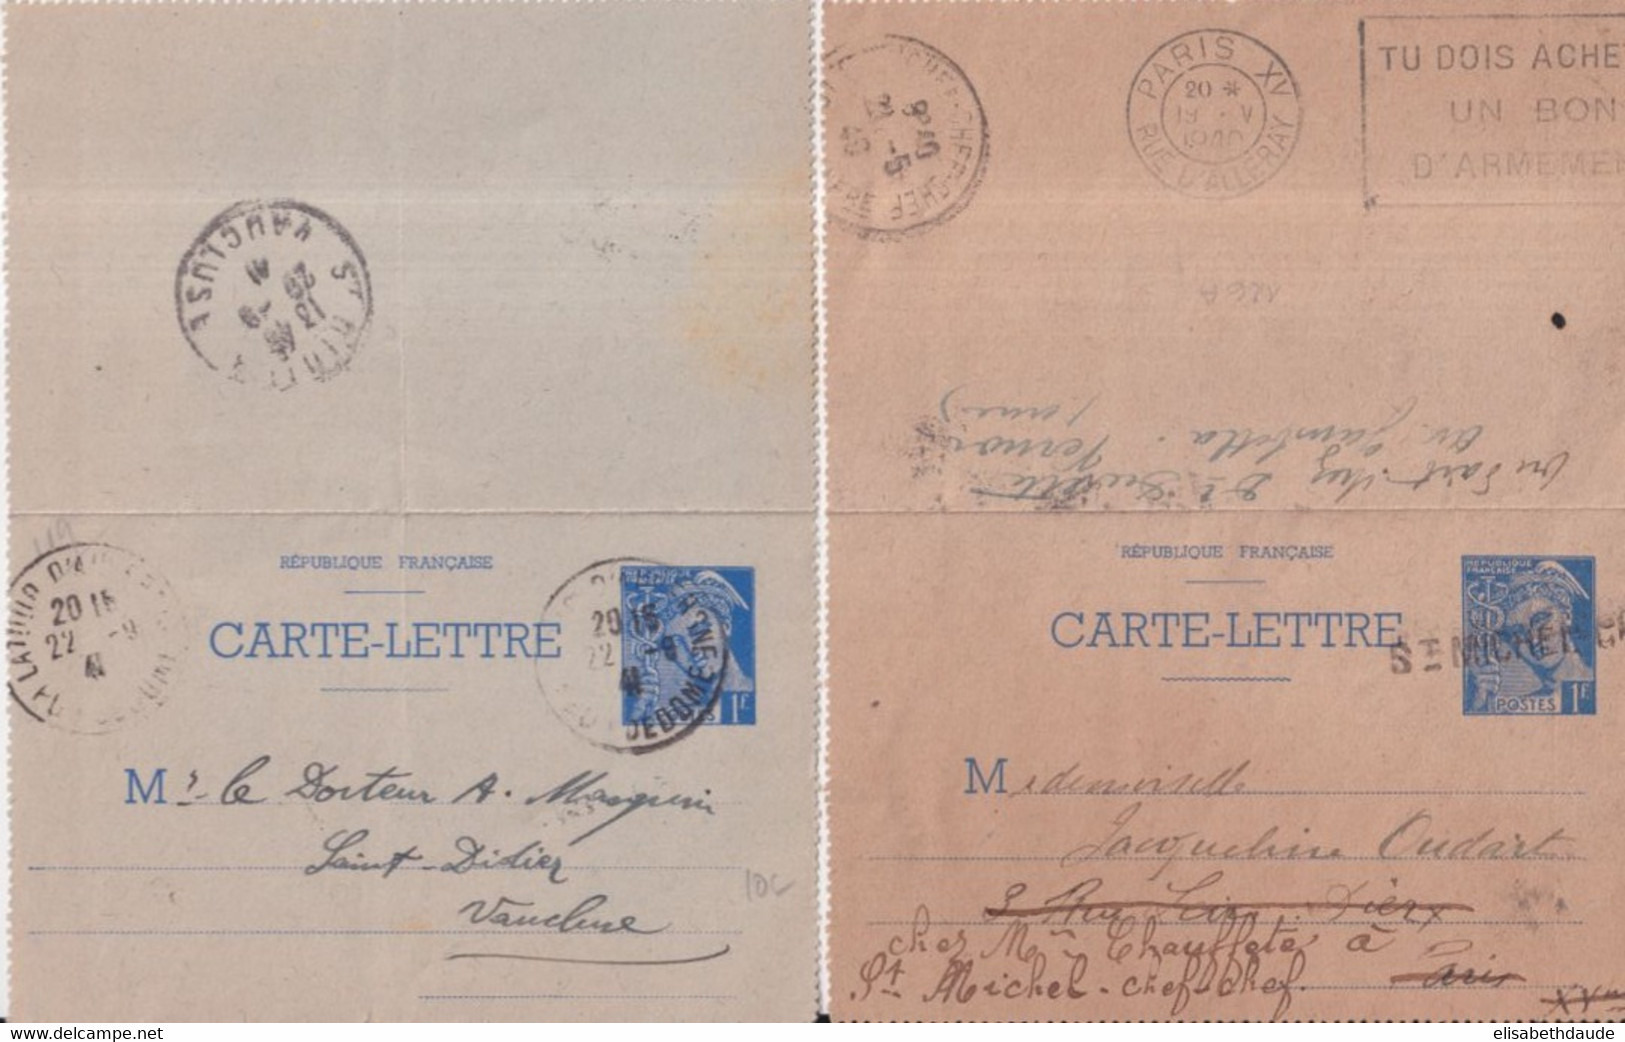 1940/41 - 2 CARTES-LETTRE ENTIER MERCURE - UNE READRESSEE ANNULATION LINEAIRE + MECA PARIS RARE - COULEURS DIFFERENTES ! - Cartes-lettres